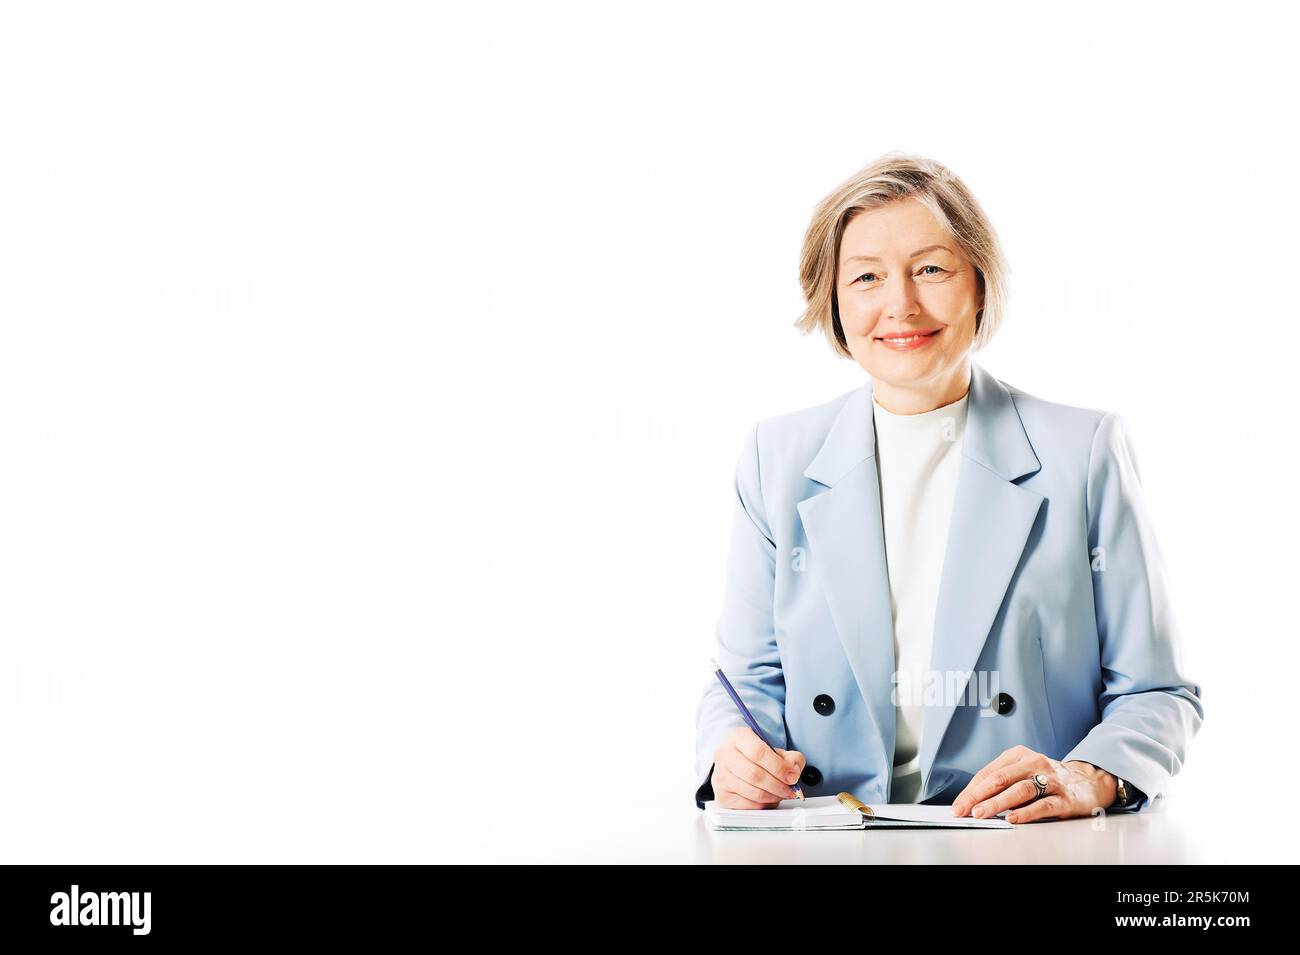 Studioporträt einer Frau mittleren Alters, die auf weißem Hintergrund posiert, am Schreibtisch sitzt und sich Notizen macht Stockfoto